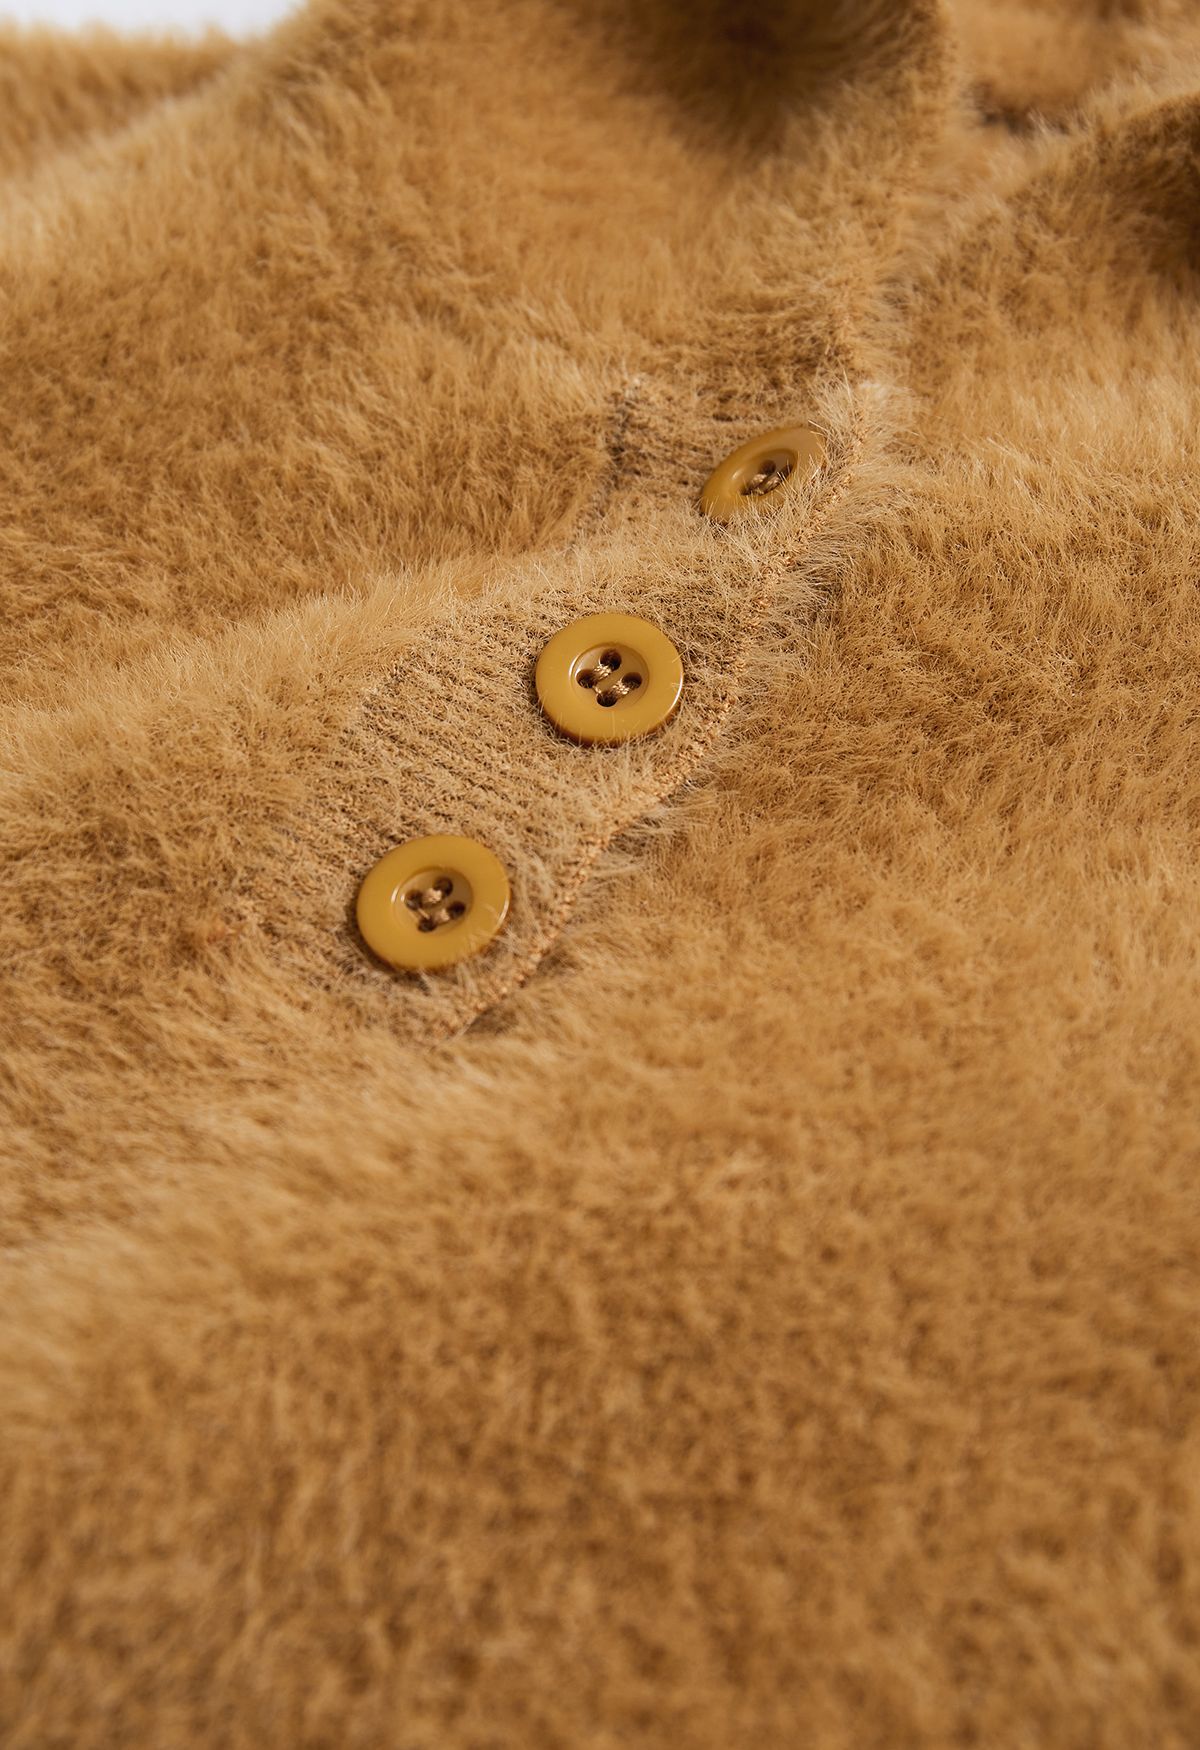 Maglione con cappuccio in maglia sfocata a forma di simpatico orso in marrone chiaro per bambini